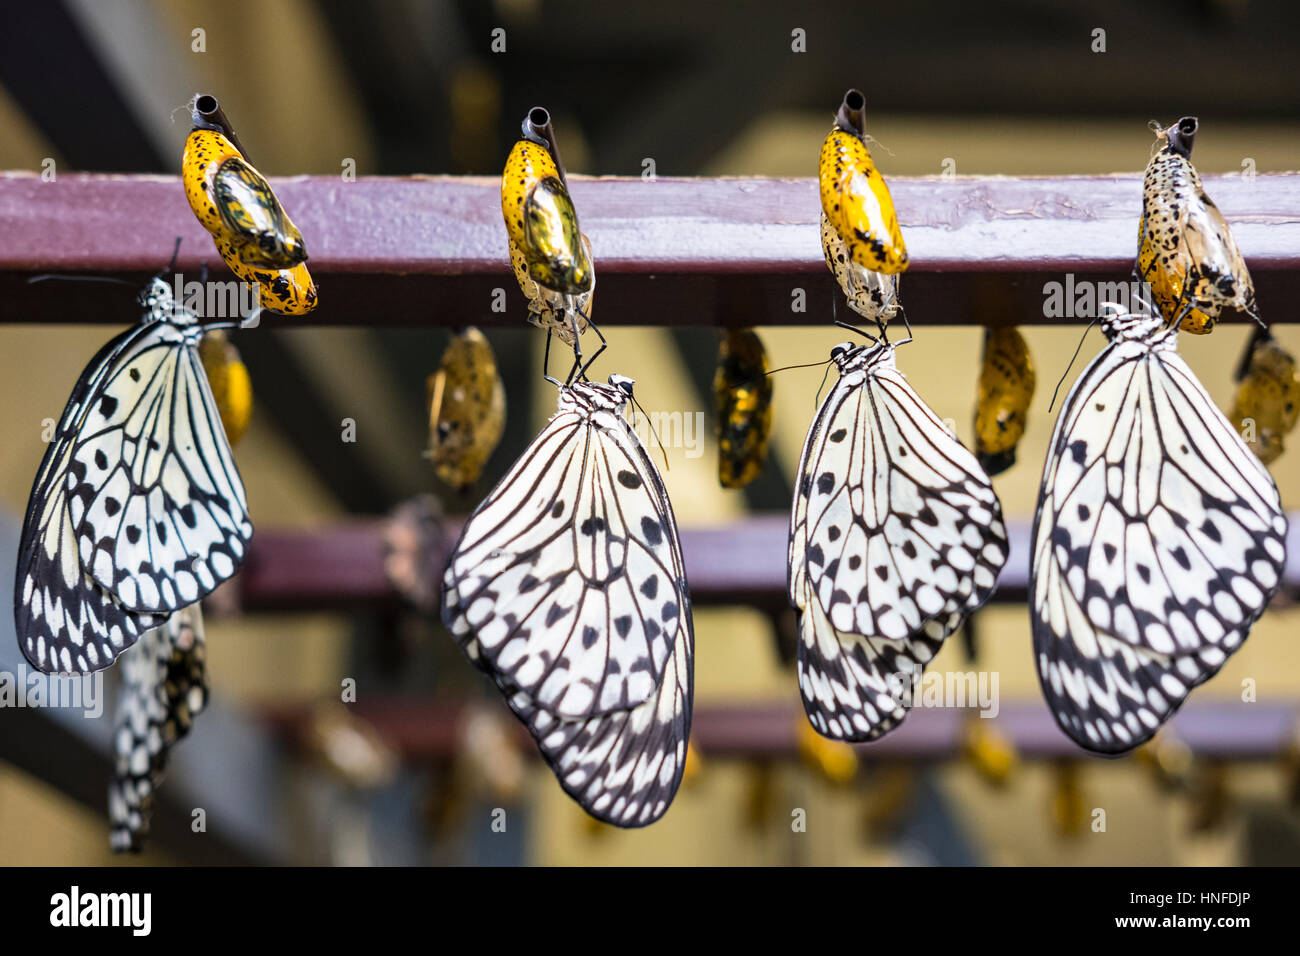 La carta di riso farfalle (Idea leuconoe) recentemente emerse da chrysalides / crisalide in incubatore in Cambridge Conservatory della Farfalla, Ontario. Foto Stock